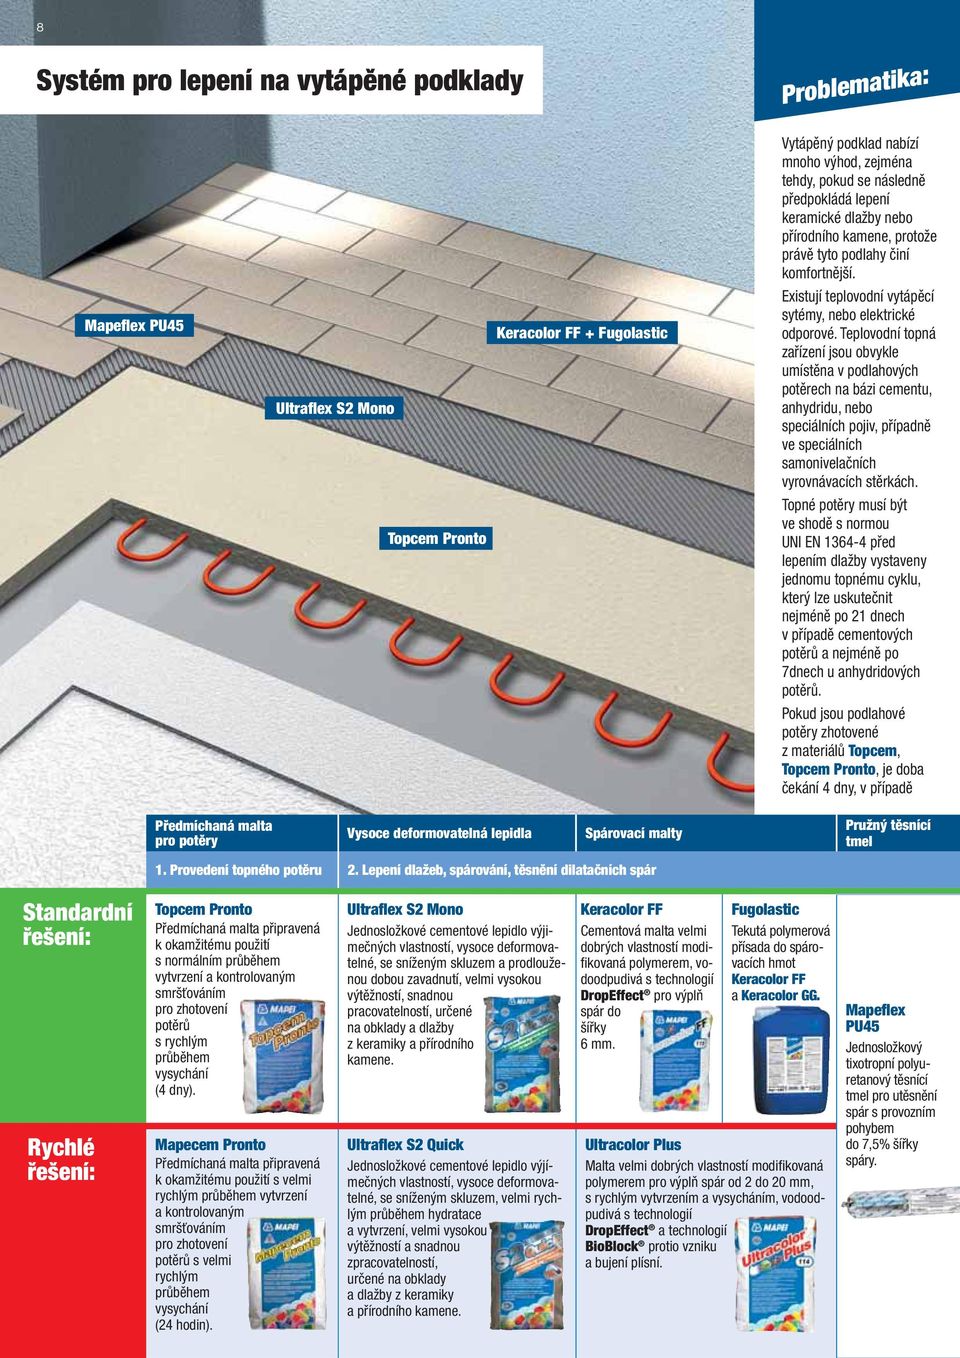 Teplovodní topná zařízení jsou obvykle umístěna v podlahových potěrech na bázi cementu, anhydridu, nebo speciálních pojiv, případně ve speciálních samonivelačních vyrovnávacích stěrkách.